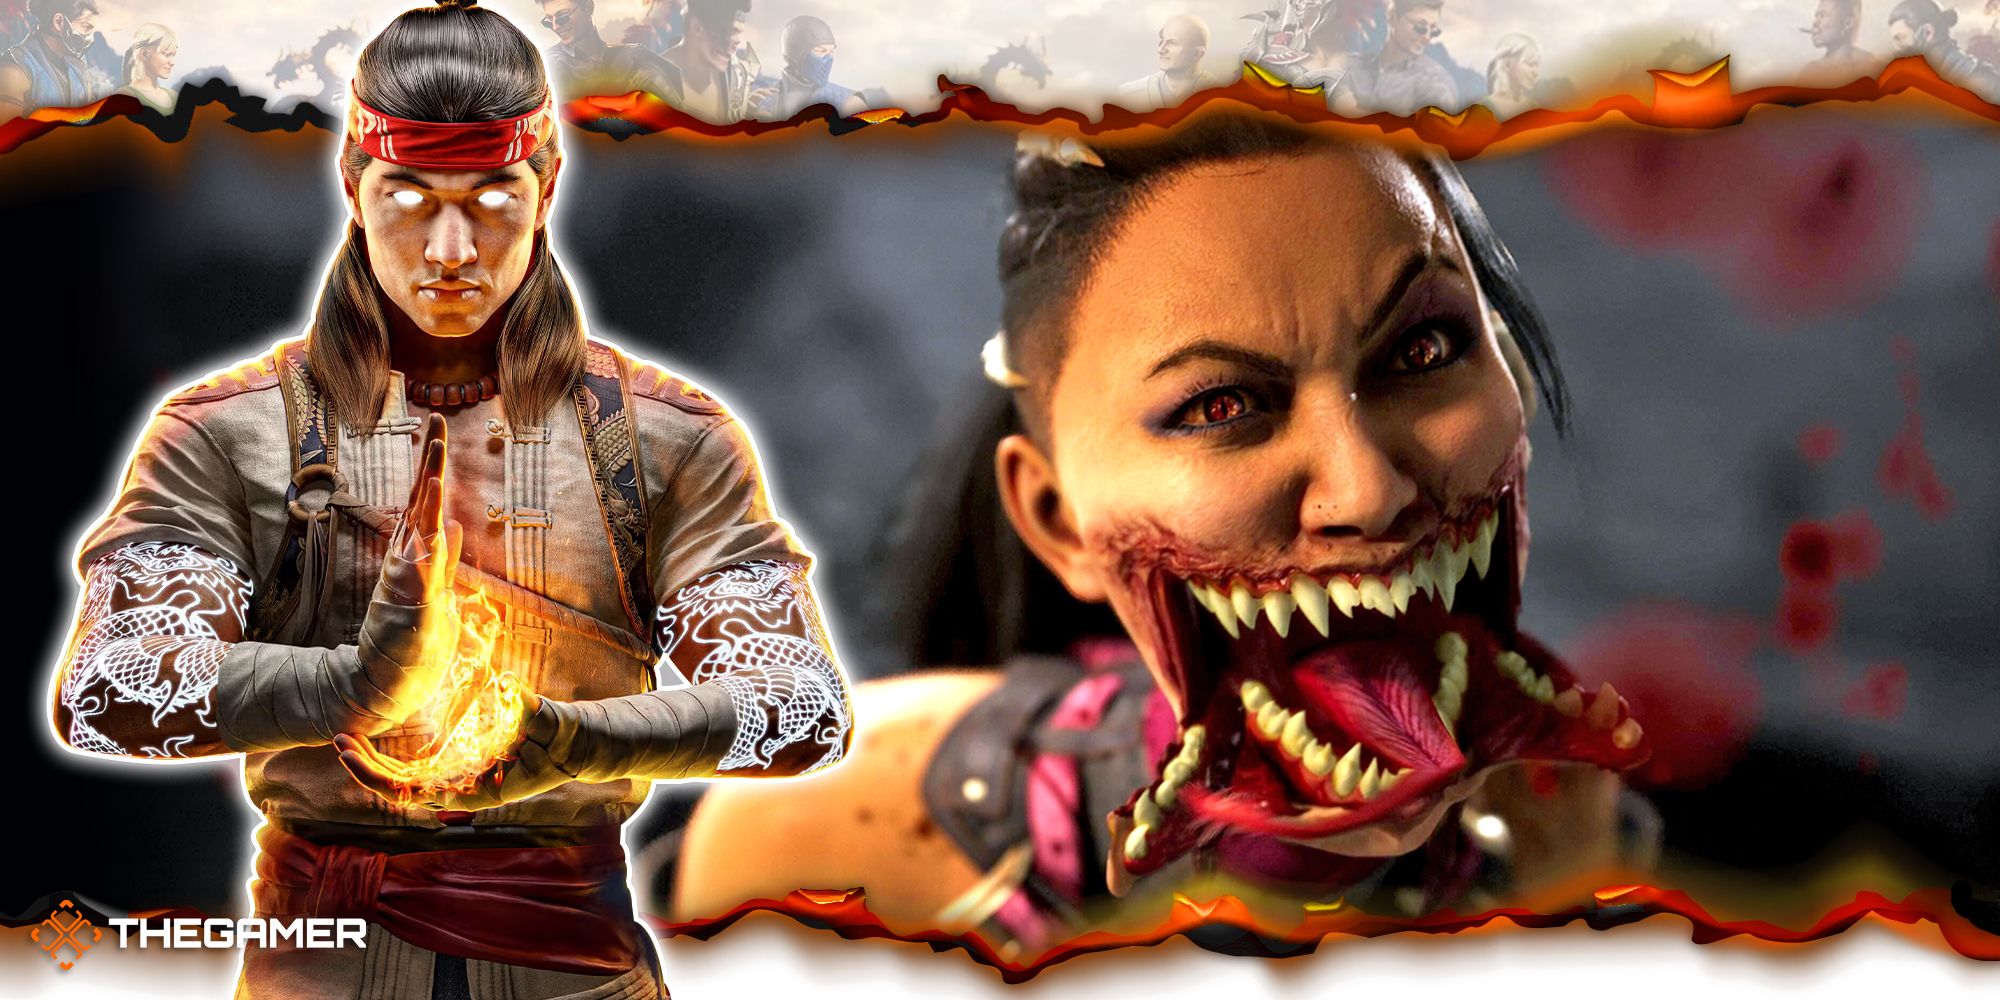 Mortal Kombat Movie: Get a Closer Look at Mileena, Kung Lao, and